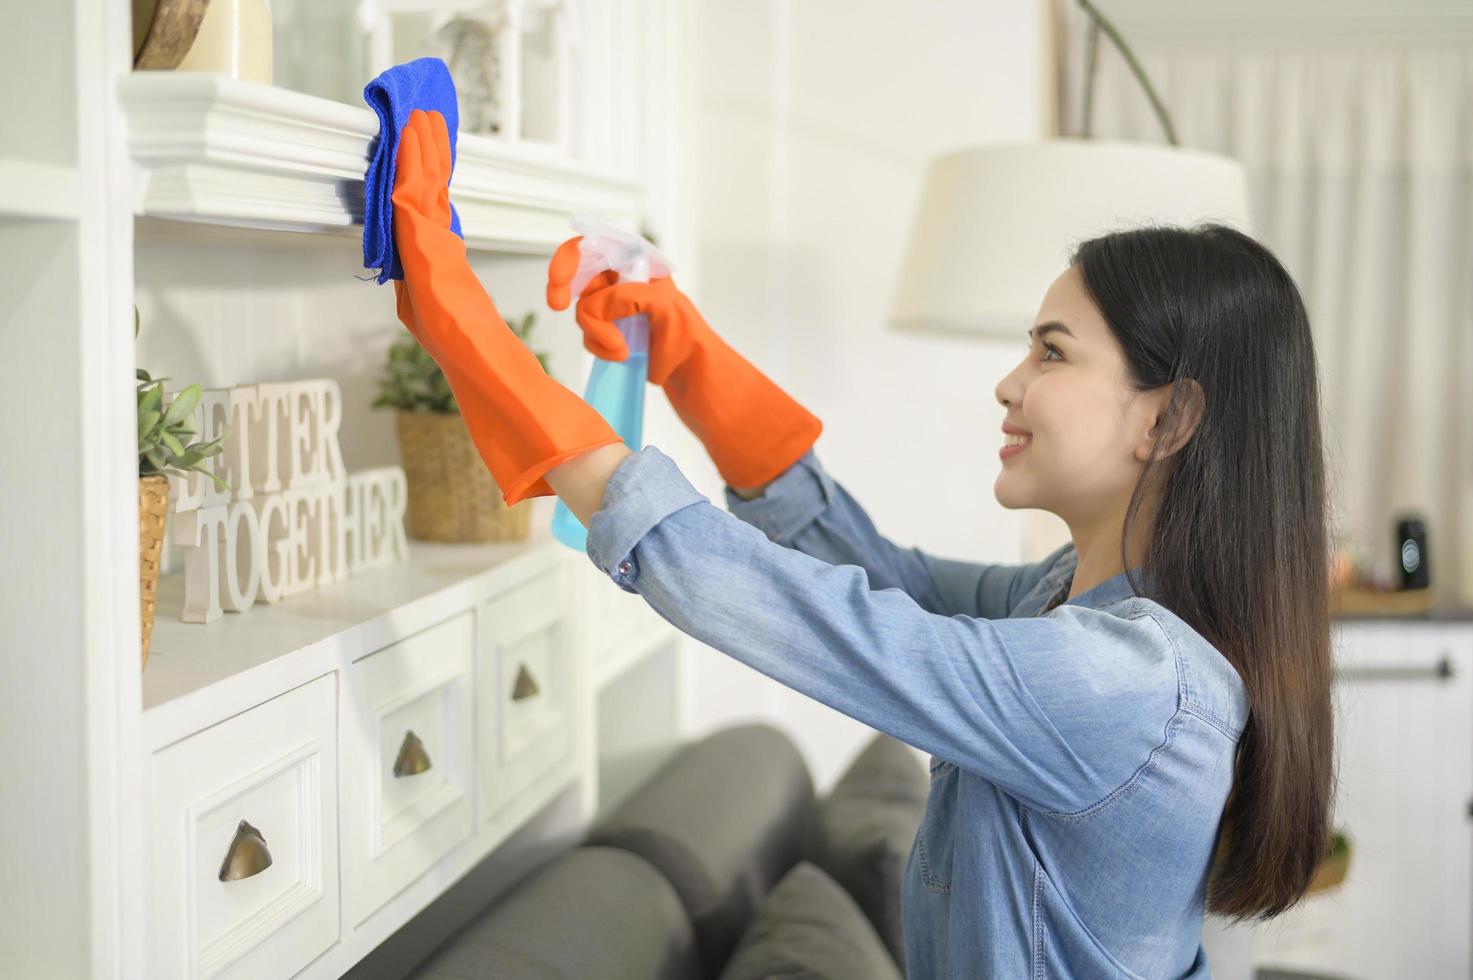 una mujer con guantes de limpieza que usa desinfectante en aerosol de alcohol para limpiar la casa, saludable y médica, concepto de protección covid-19 en el hogar foto